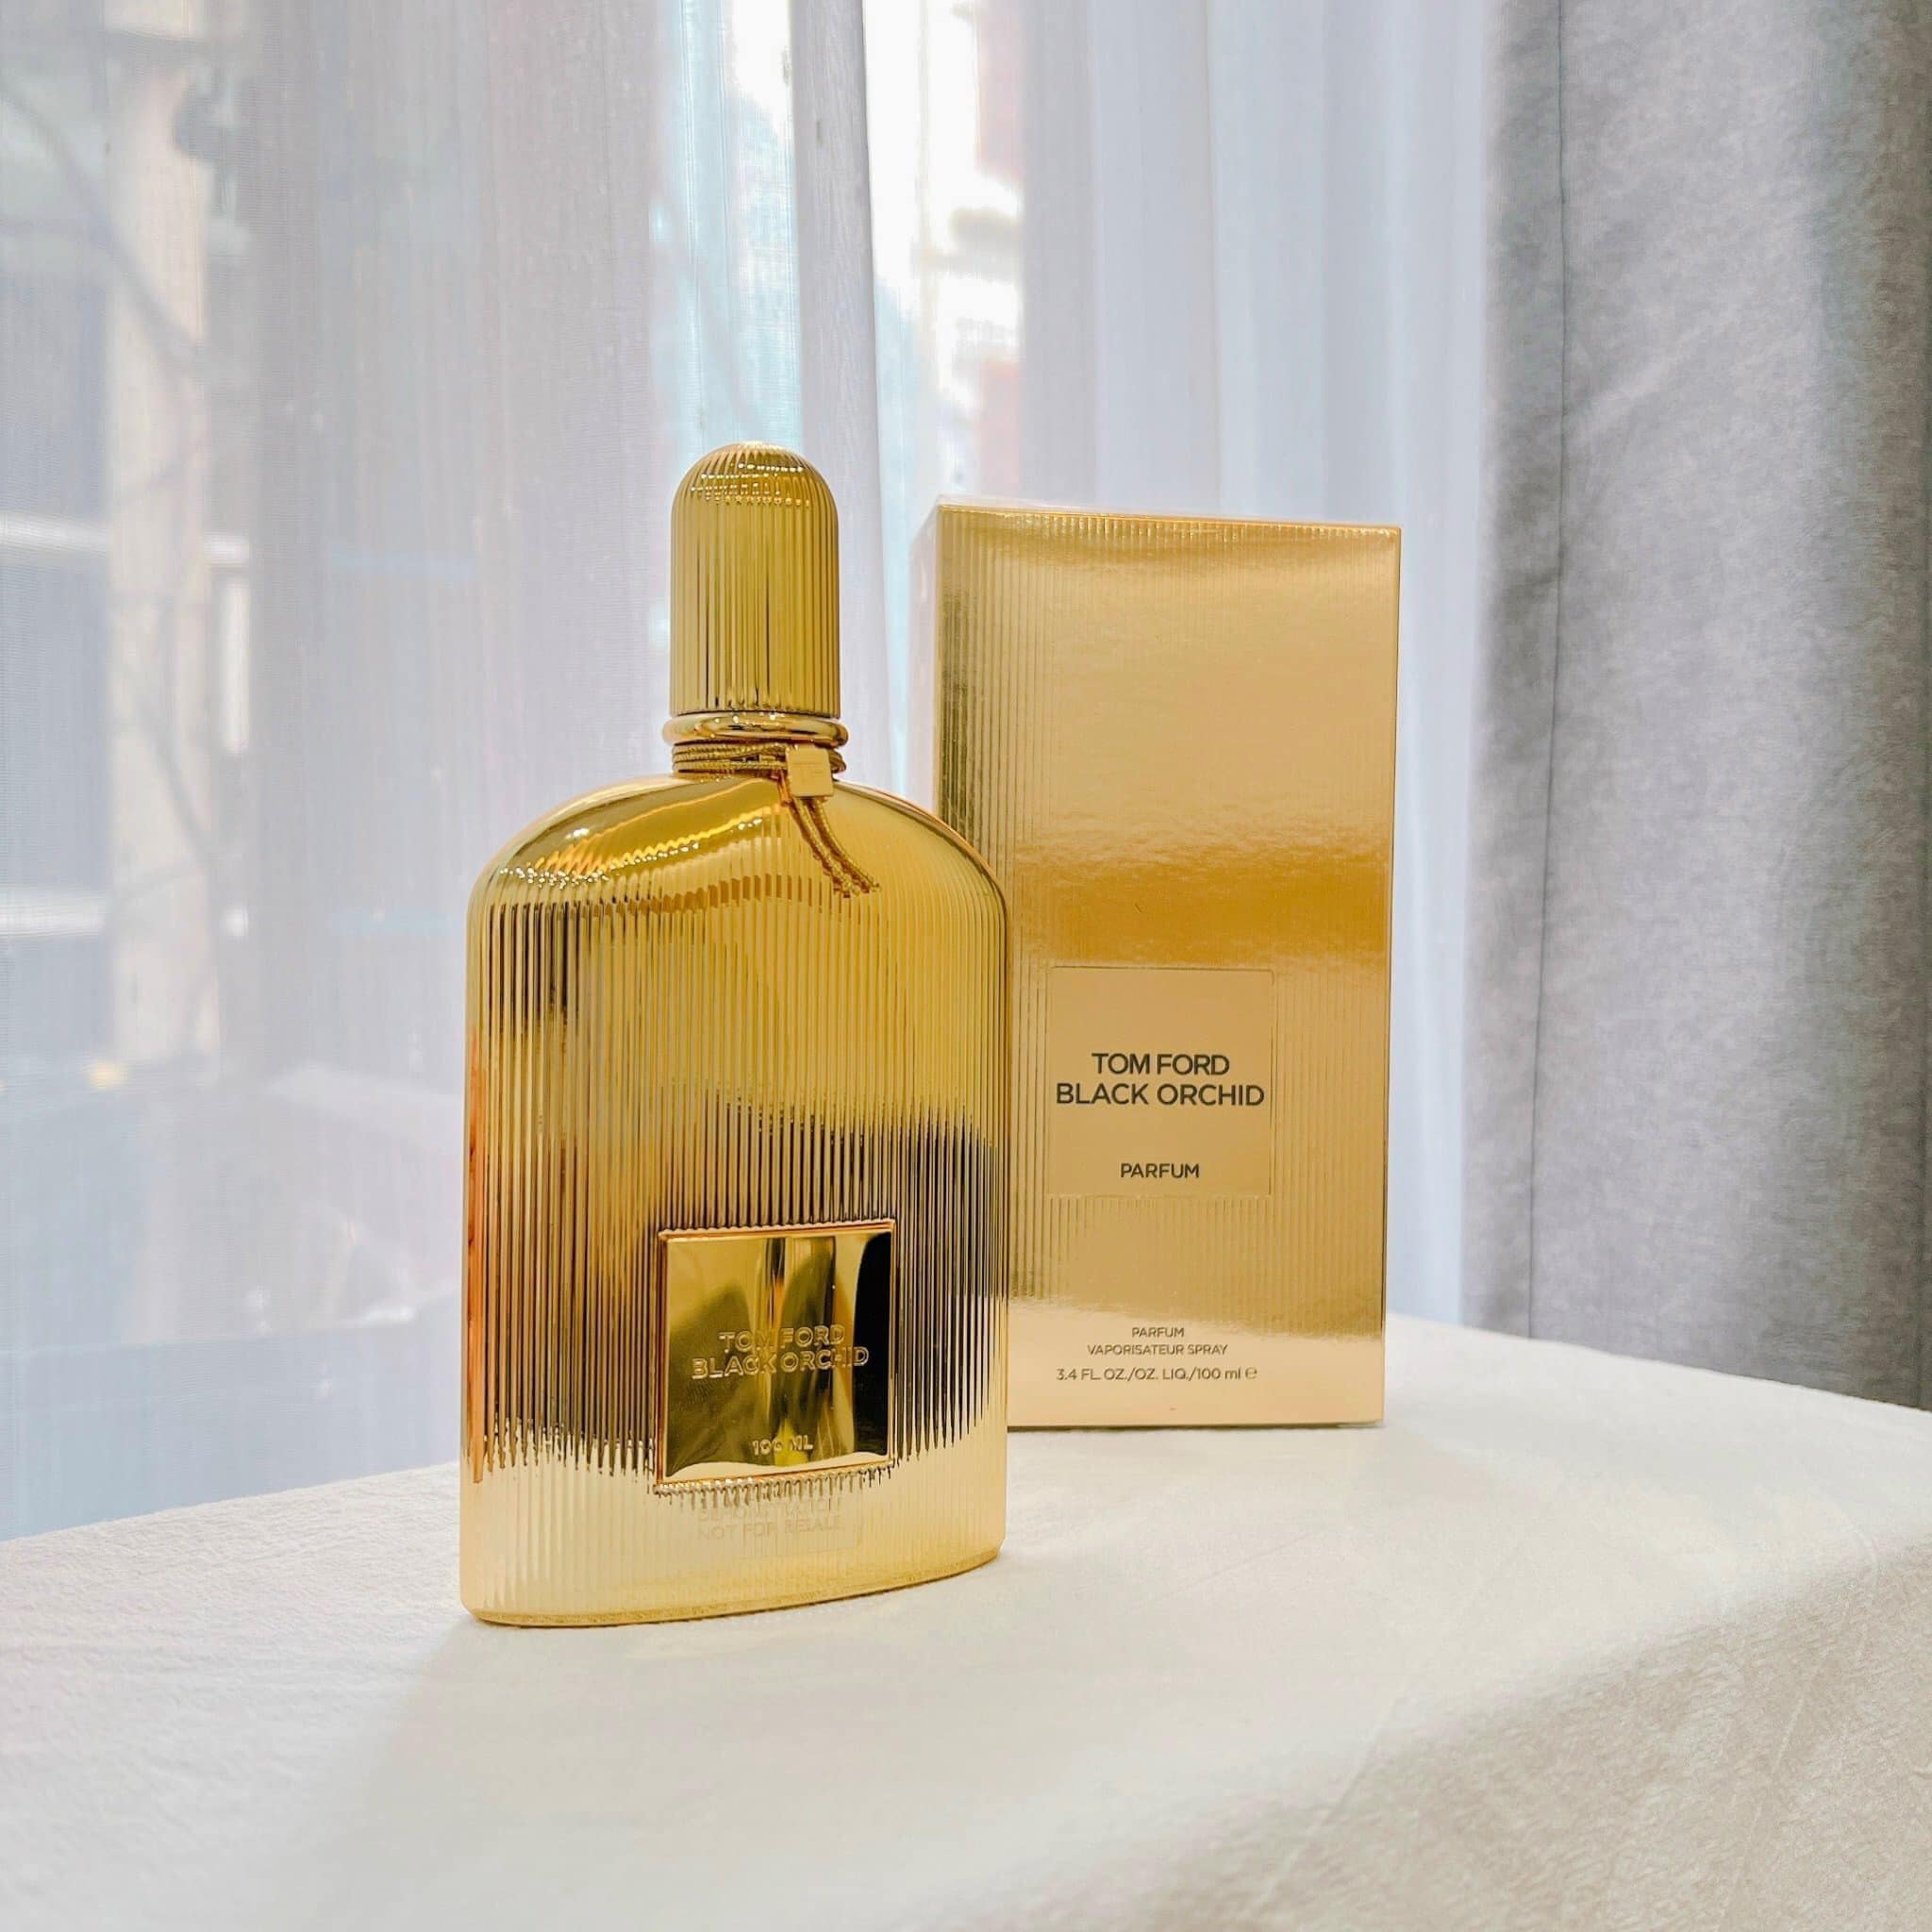 Tom Ford Black Orchid Parfum 4 - Nuochoarosa.com - Nước hoa cao cấp, chính hãng giá tốt, mẫu mới